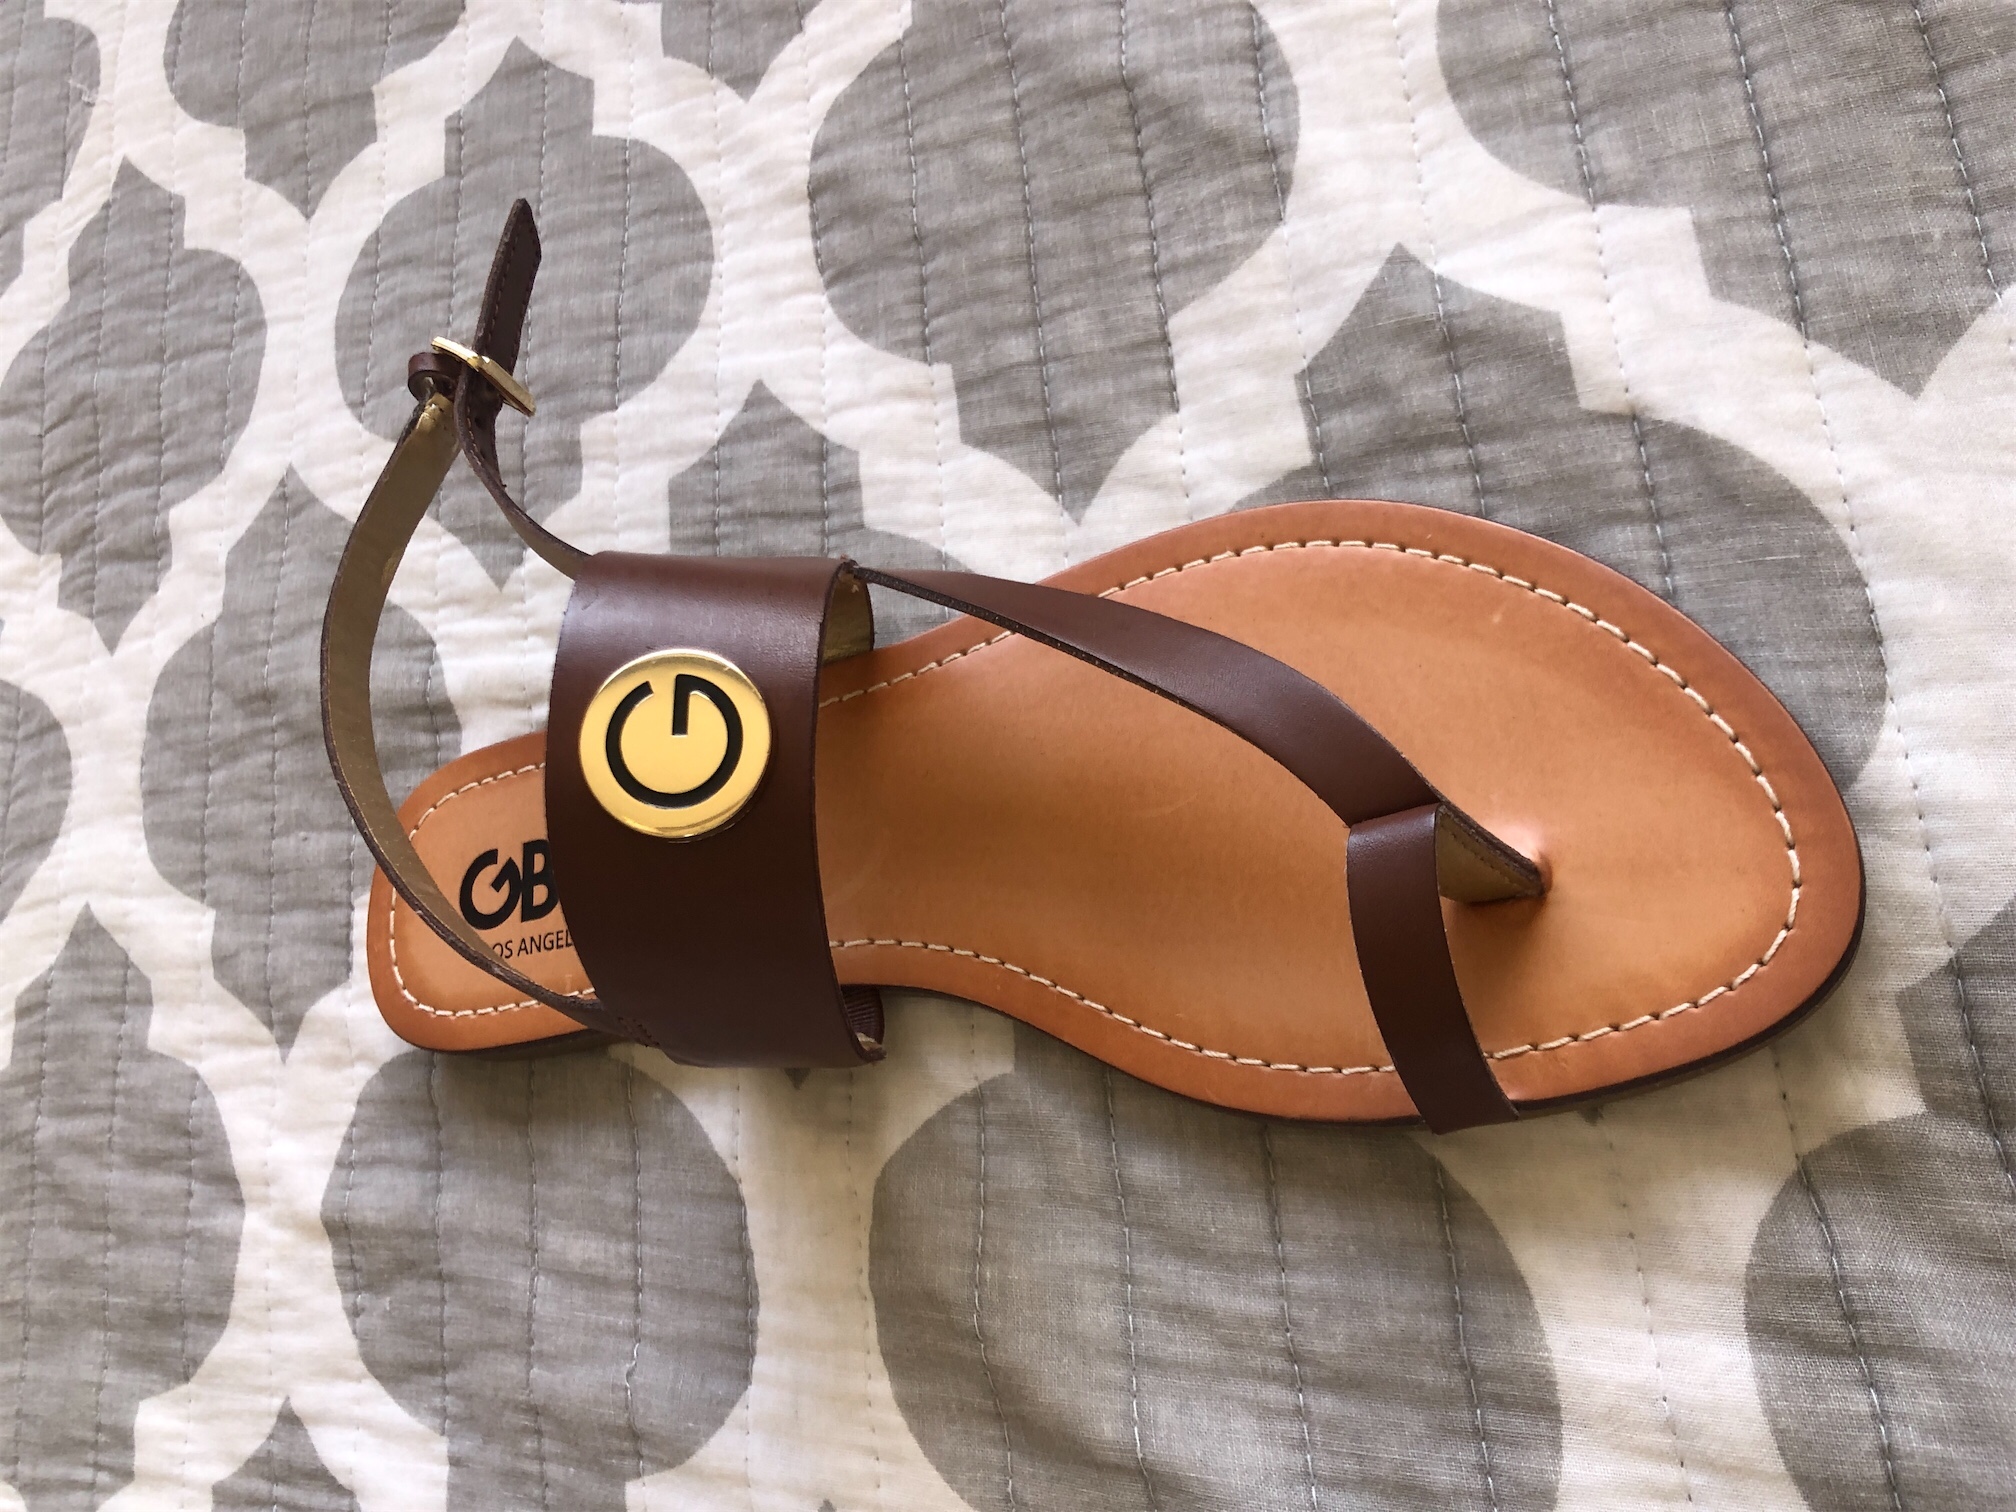 Sandalías nuevas,GBG de color marrón. 